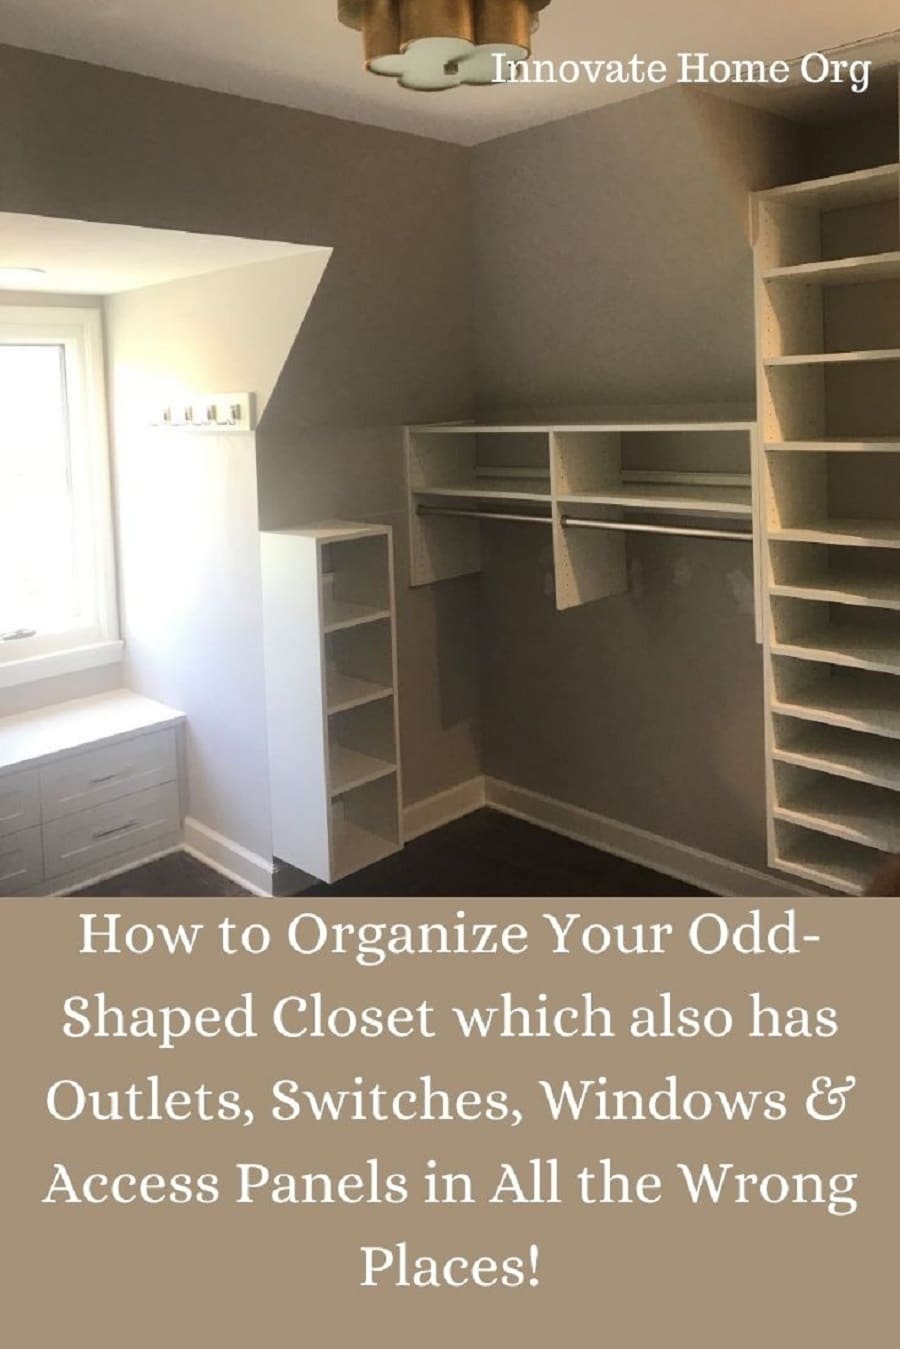 Problem 15 how to organize odd shaped closet columbus, OH | Innovate Home Org #Closet #ClosetOrganization #ClosetStorage